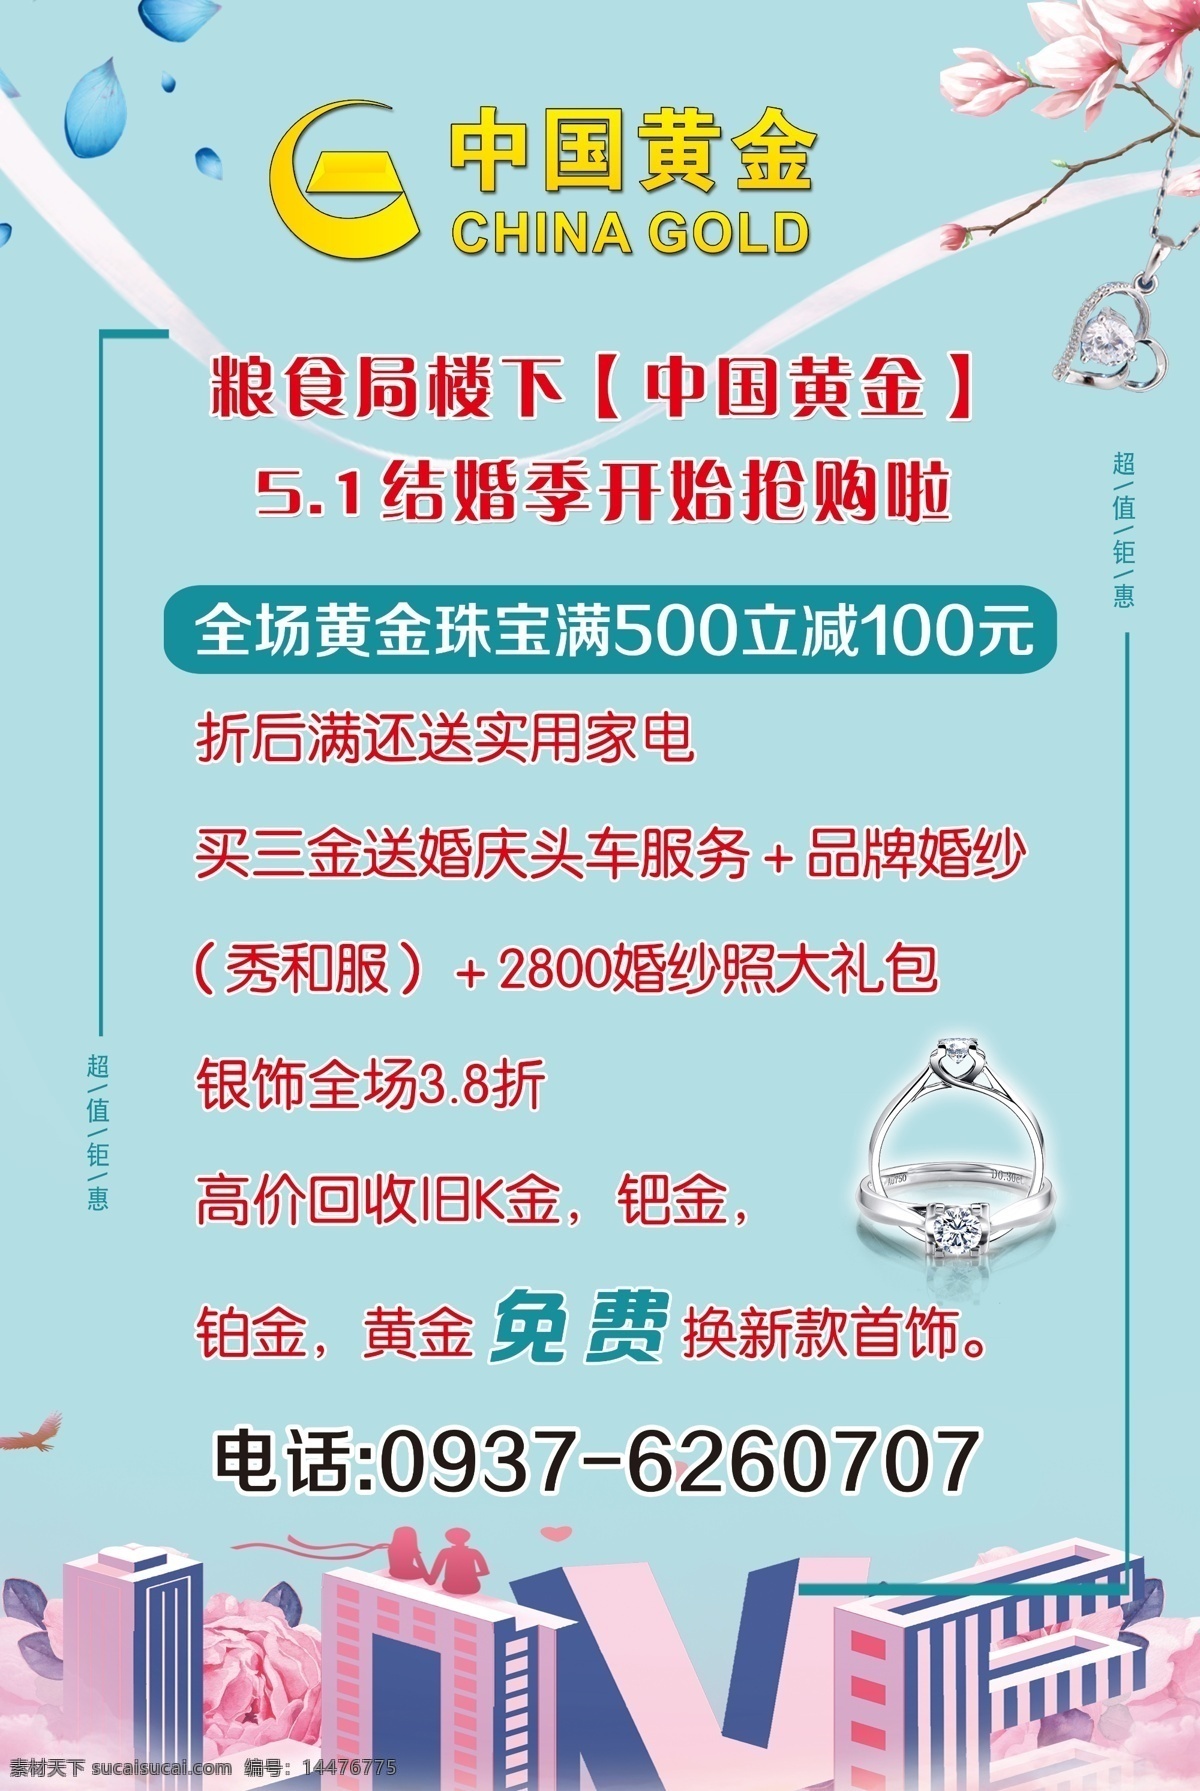 珠宝活动海报 中国黄金 活动海报 绿色 首饰 珠宝